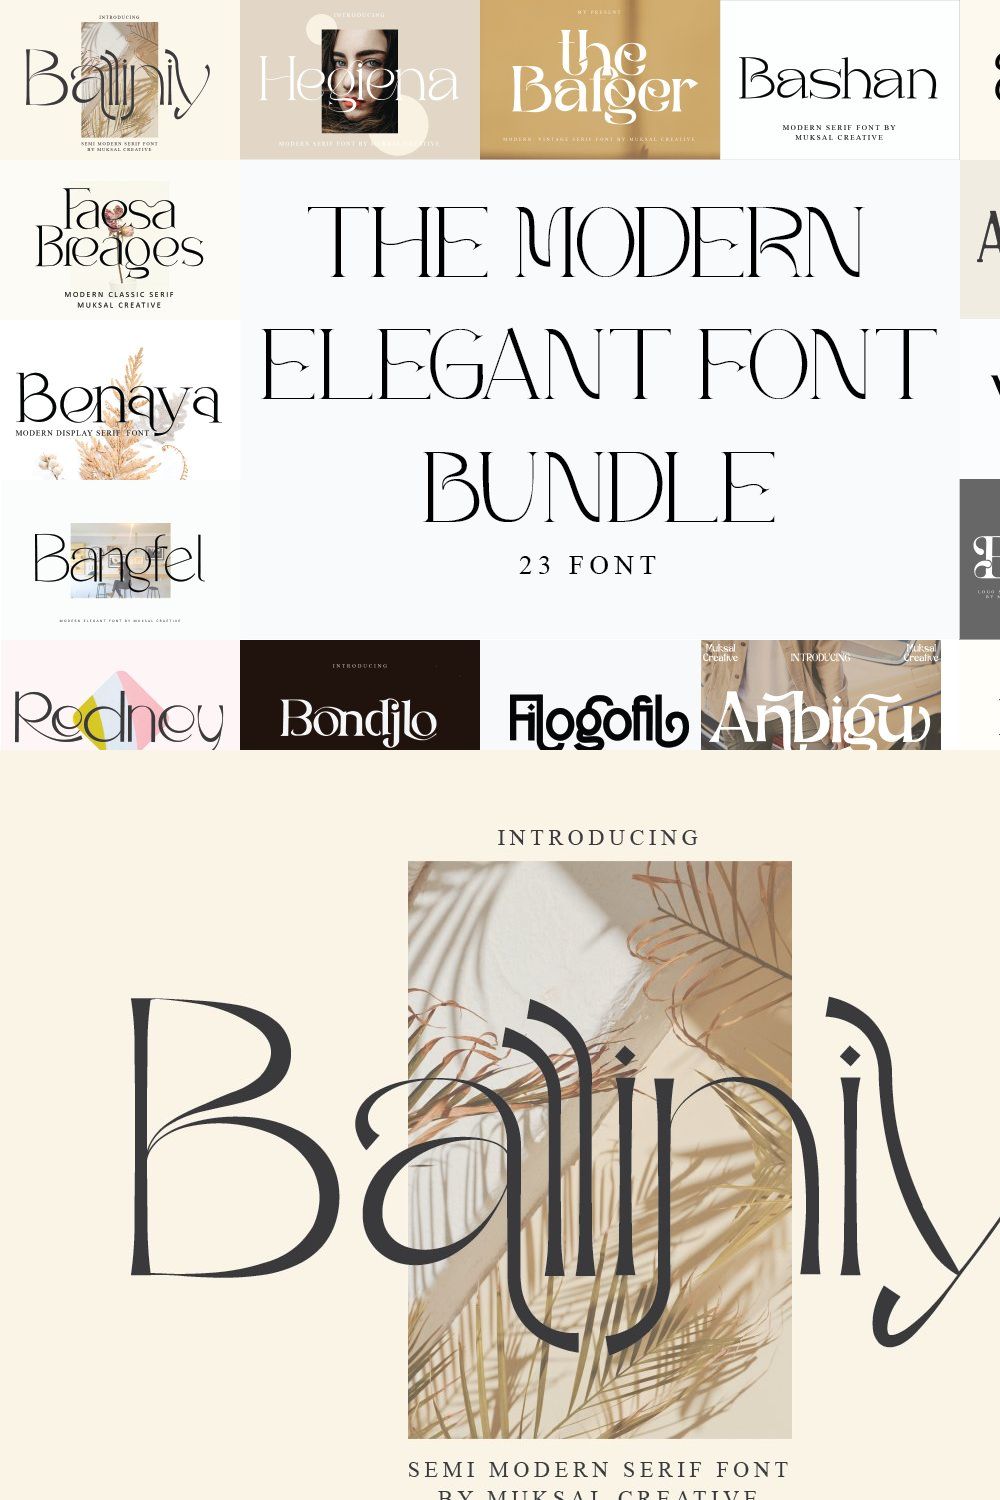 The Modern Elegant Font Bundle pinterest preview image.